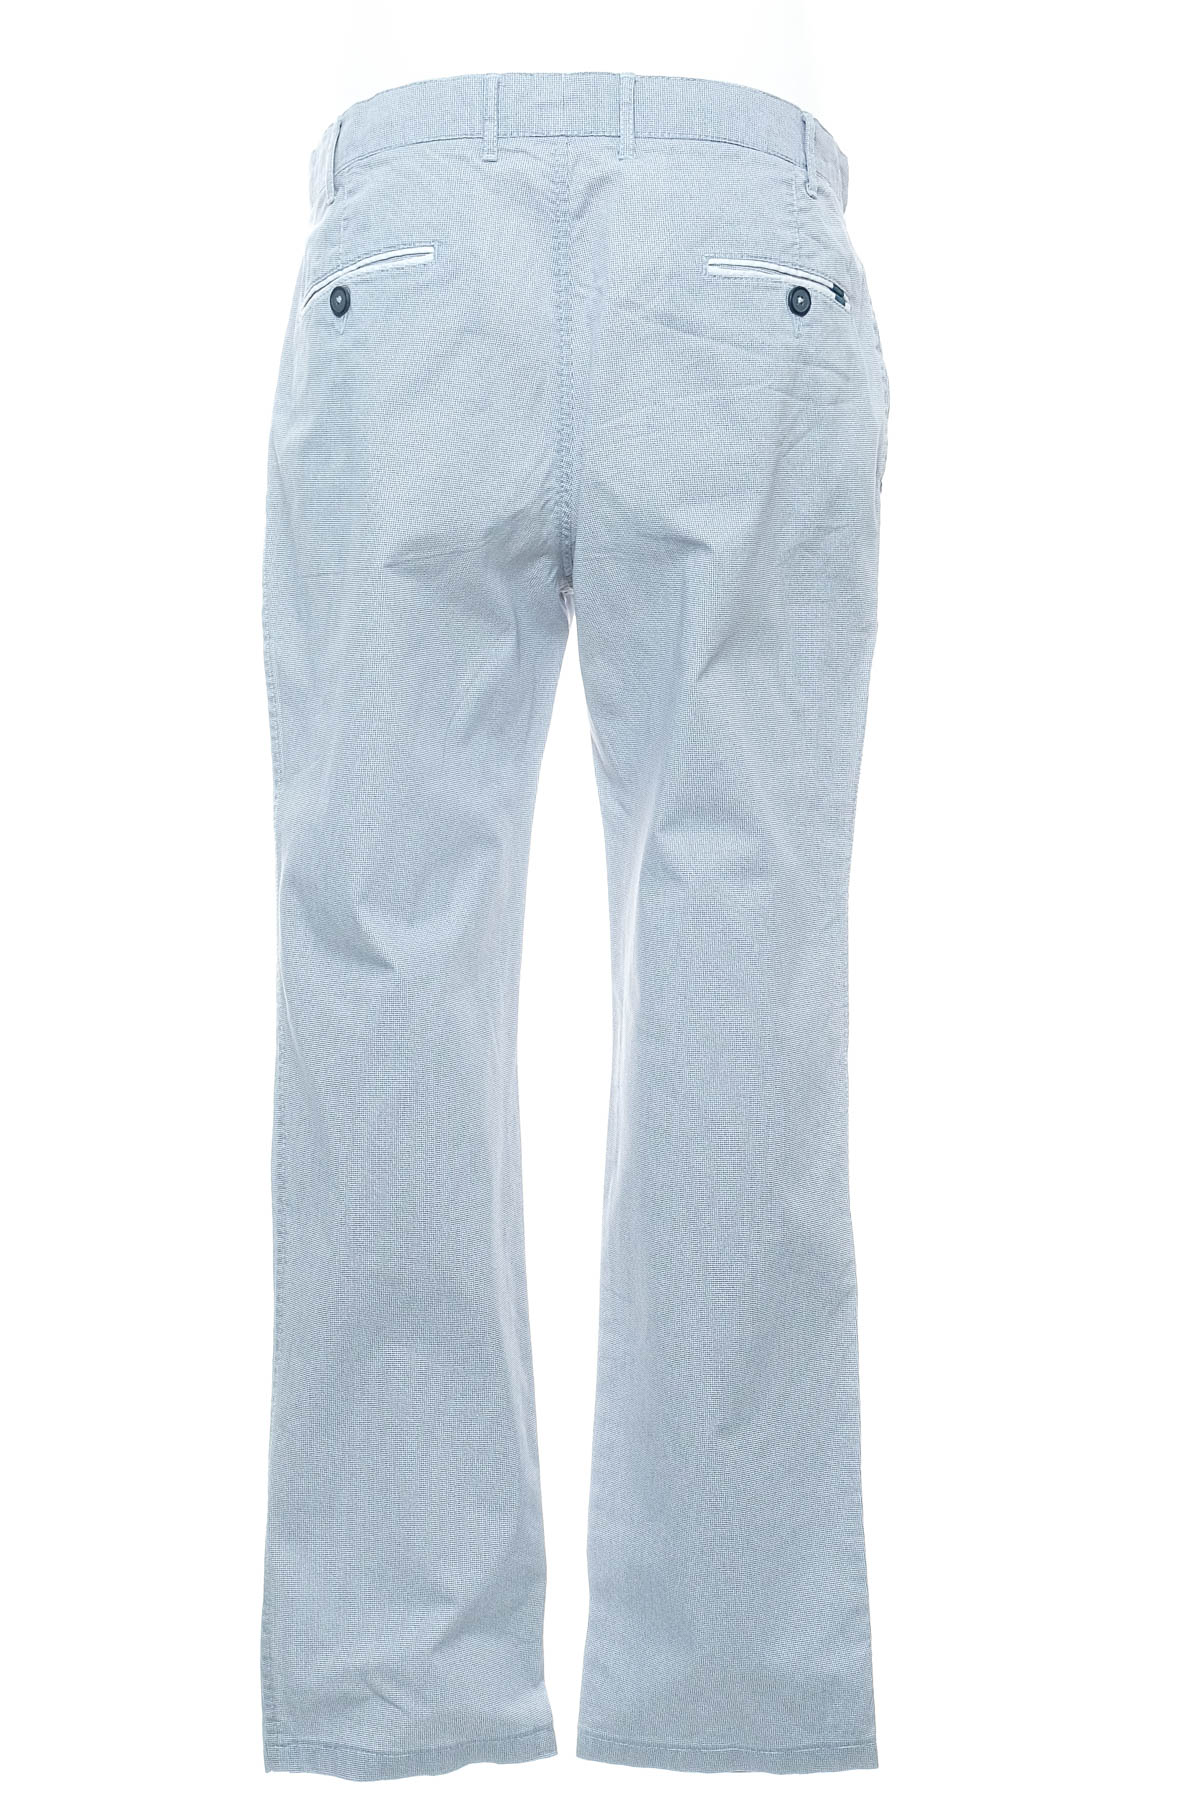 Pantalon pentru bărbați - FUGARO - 1